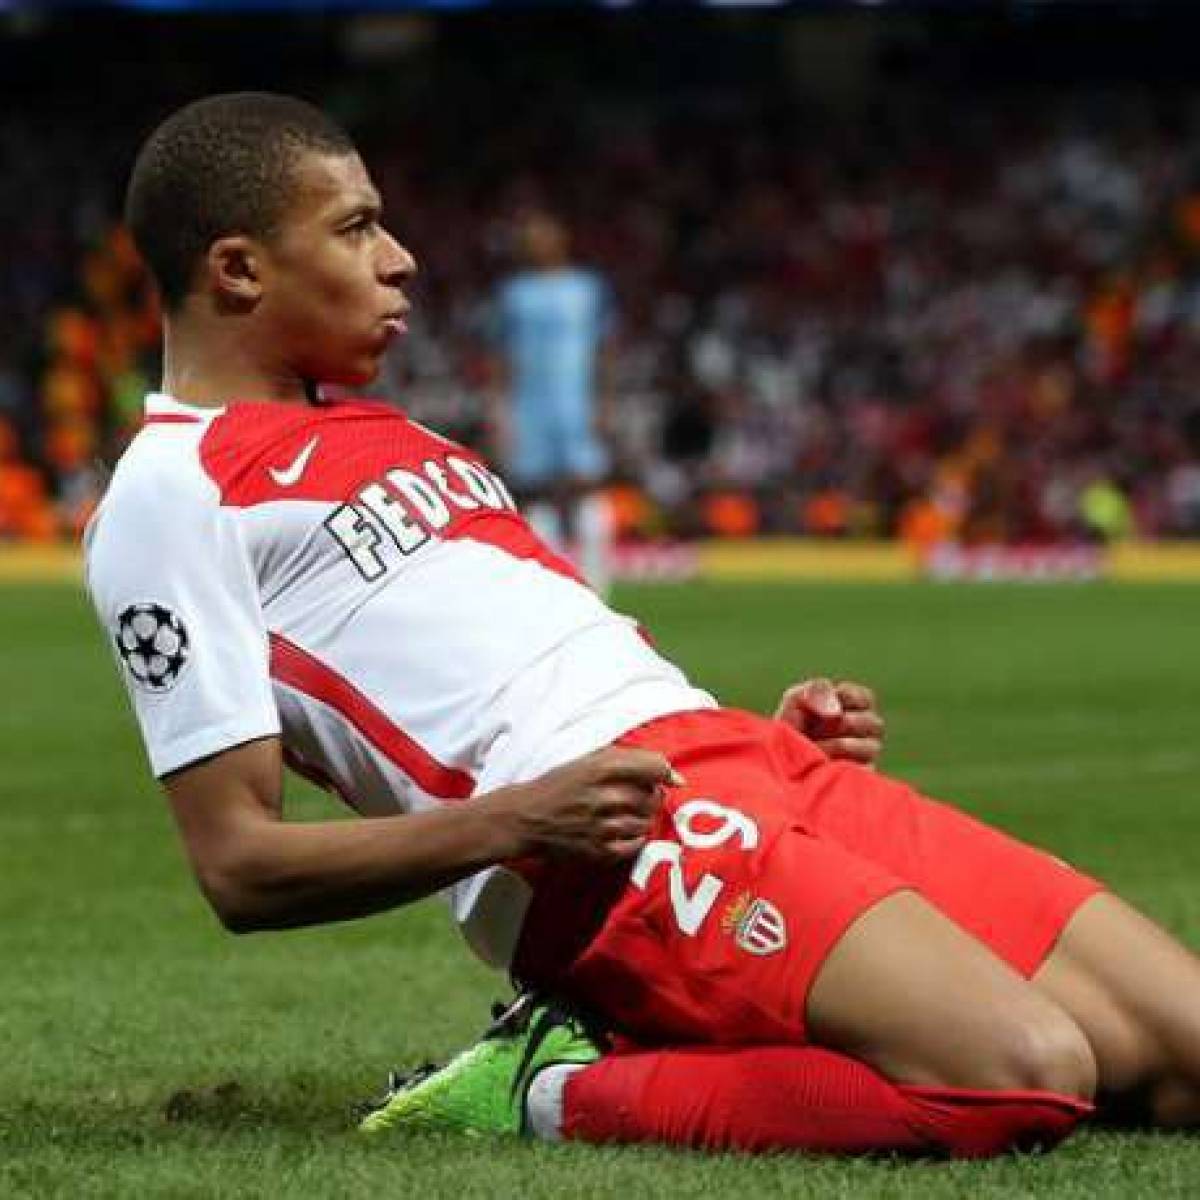 VIDEO. Monaco-City: Le jour où Kylian Mbappé a porté le maillot du